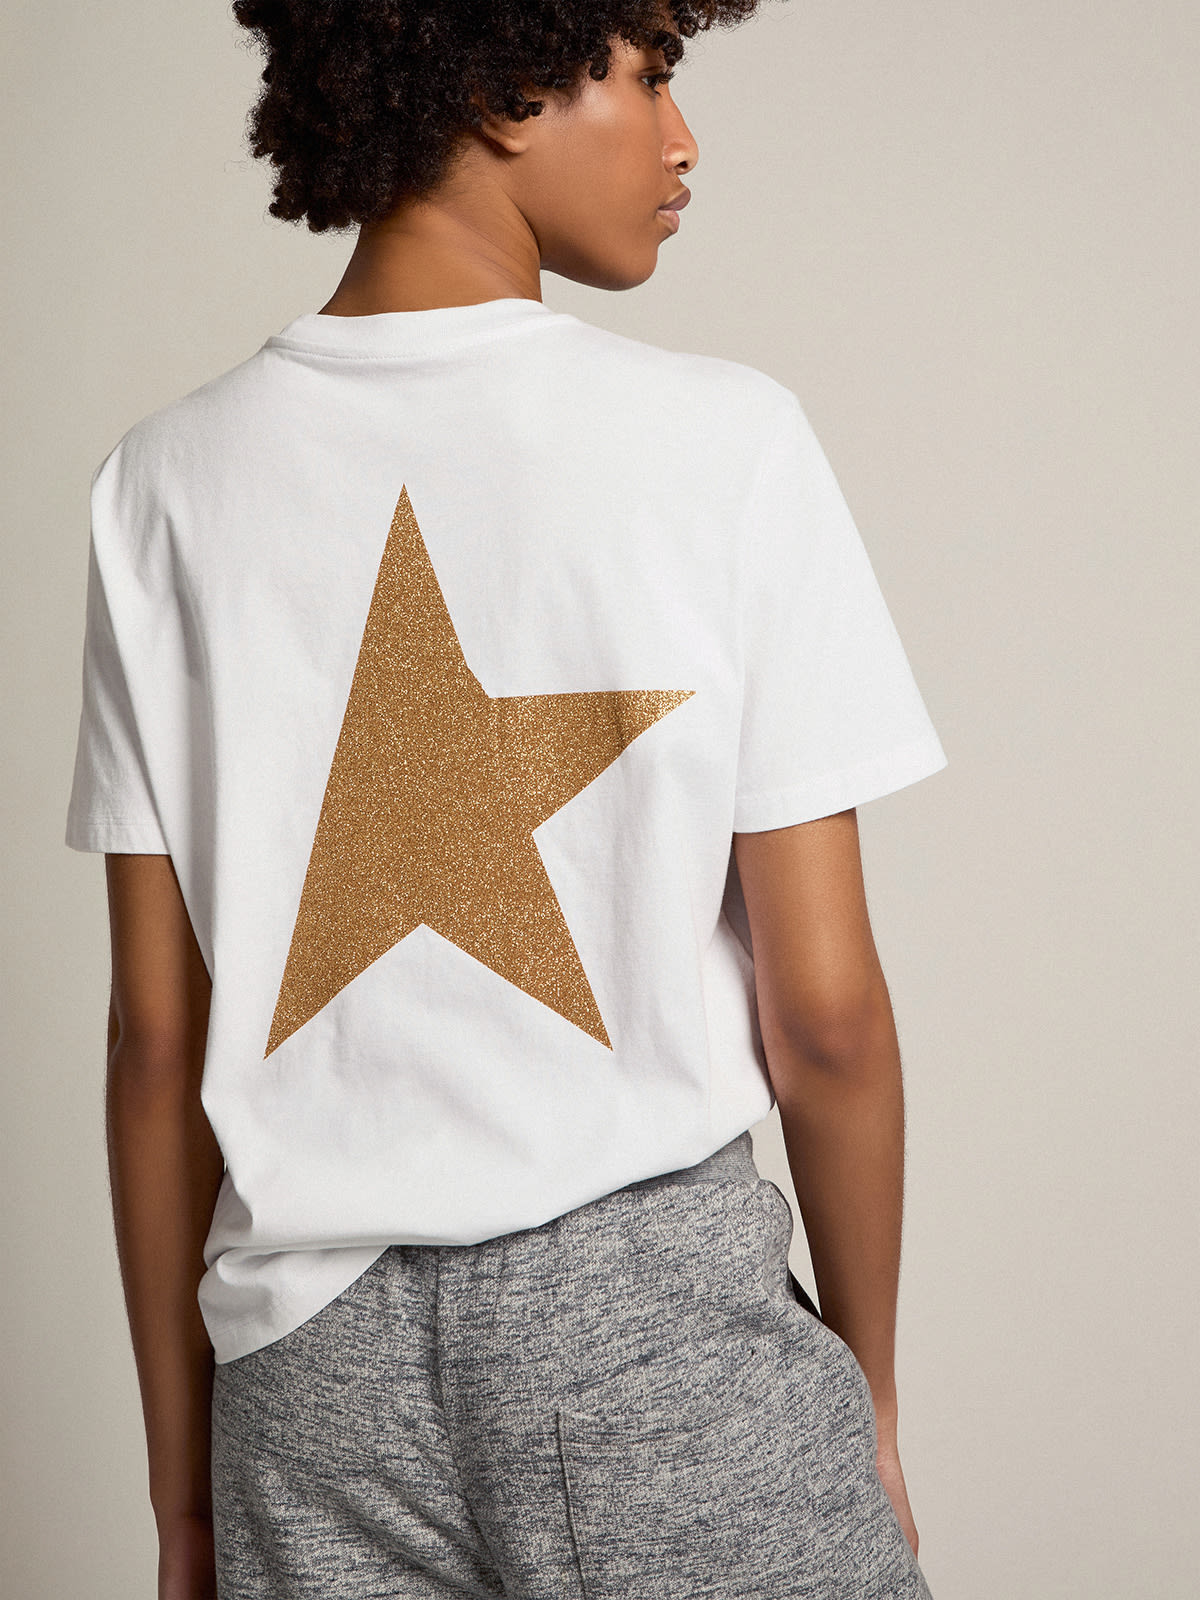 Golden Goose - Camiseta branca Coleção Star com logo e estrela de glitter dourado in 